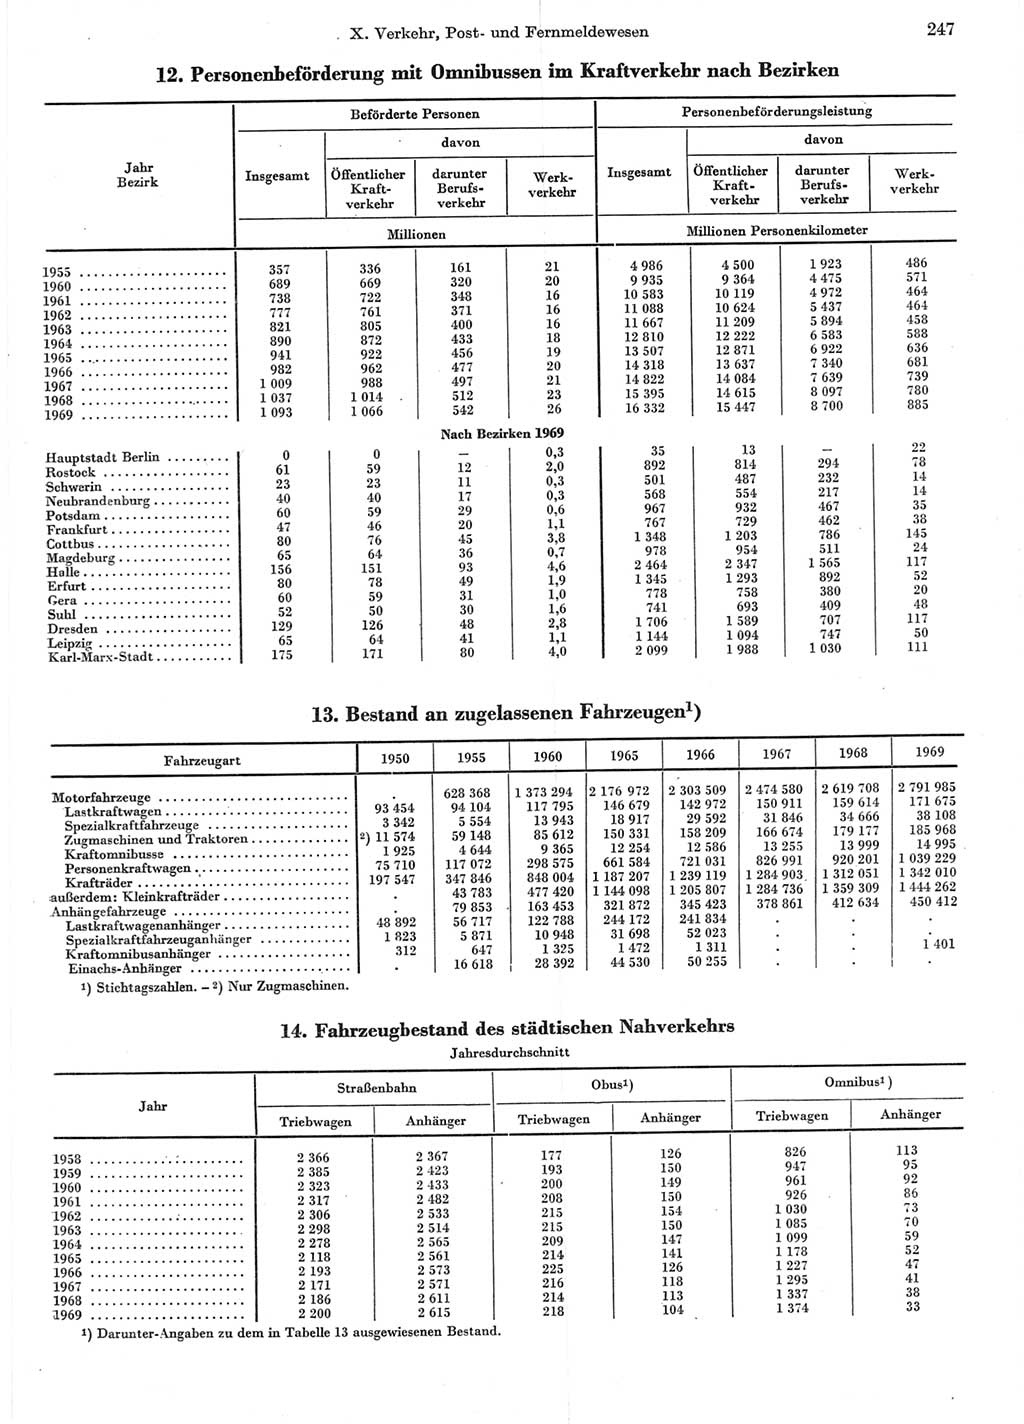 Statistisches Jahrbuch der Deutschen Demokratischen Republik (DDR) 1970, Seite 247 (Stat. Jb. DDR 1970, S. 247)